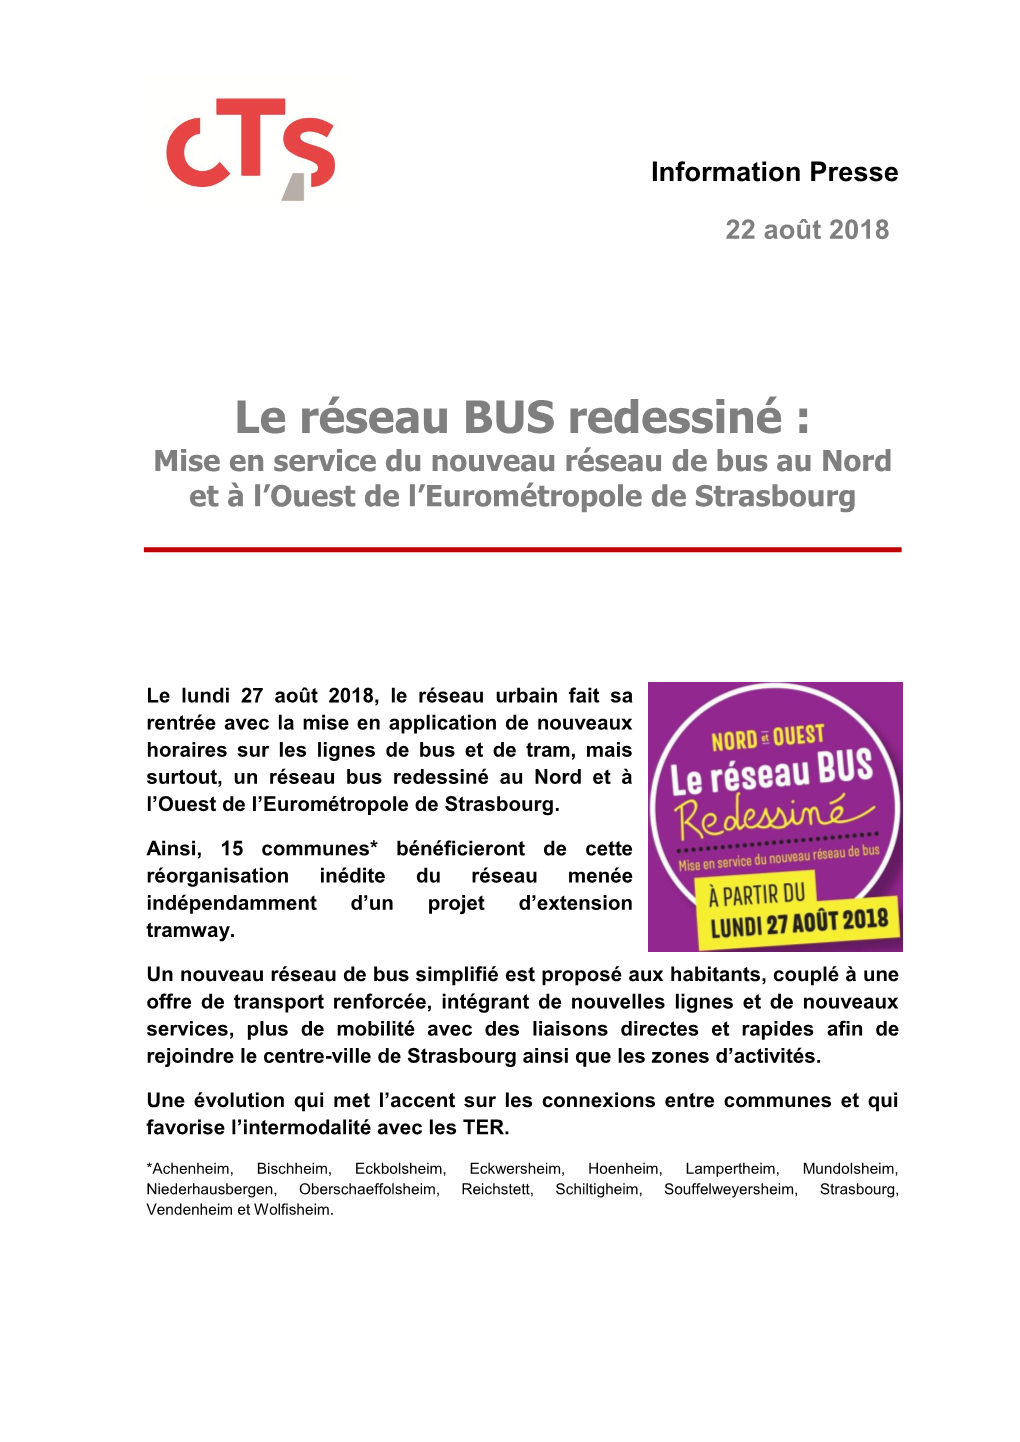 Le Réseau BUS Redessiné : Mise En Service Du Nouveau Réseau De Bus Au Nord Et À L’Ouest De L’Eurométropole De Strasbourg